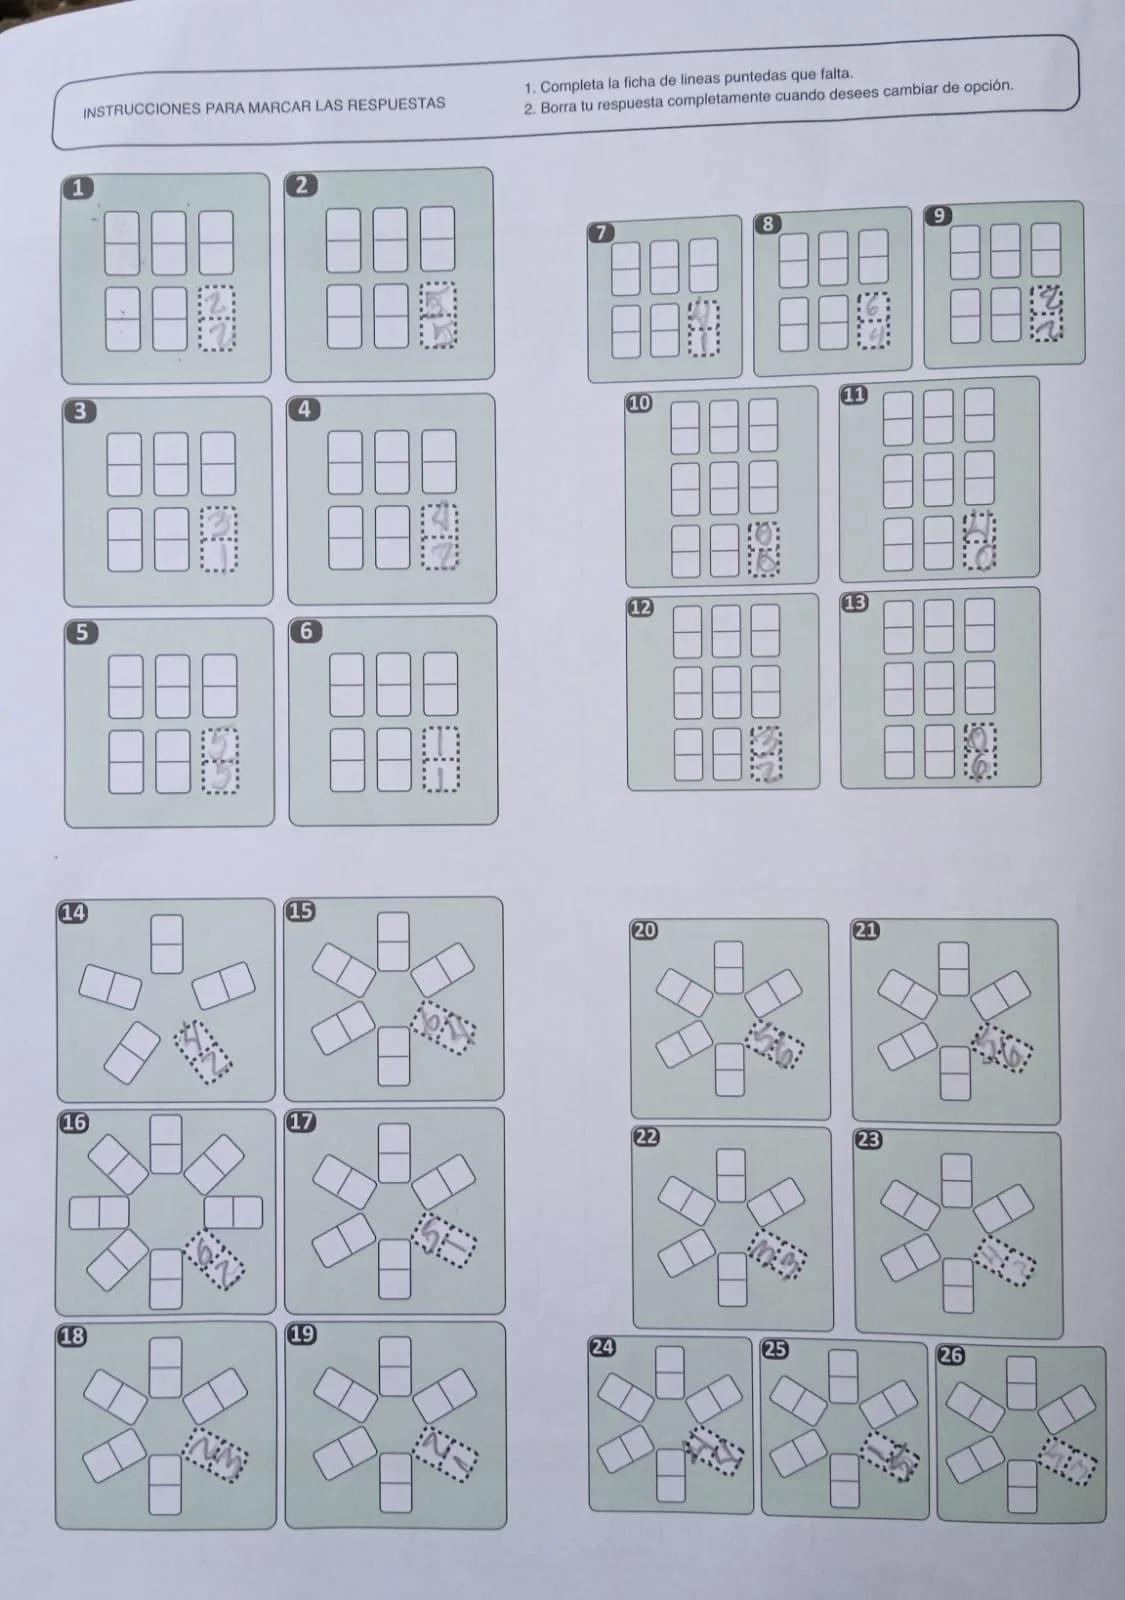 11 d-48 test de inteligencia general - Qué tipo de prueba psicométrica es el test de dominó